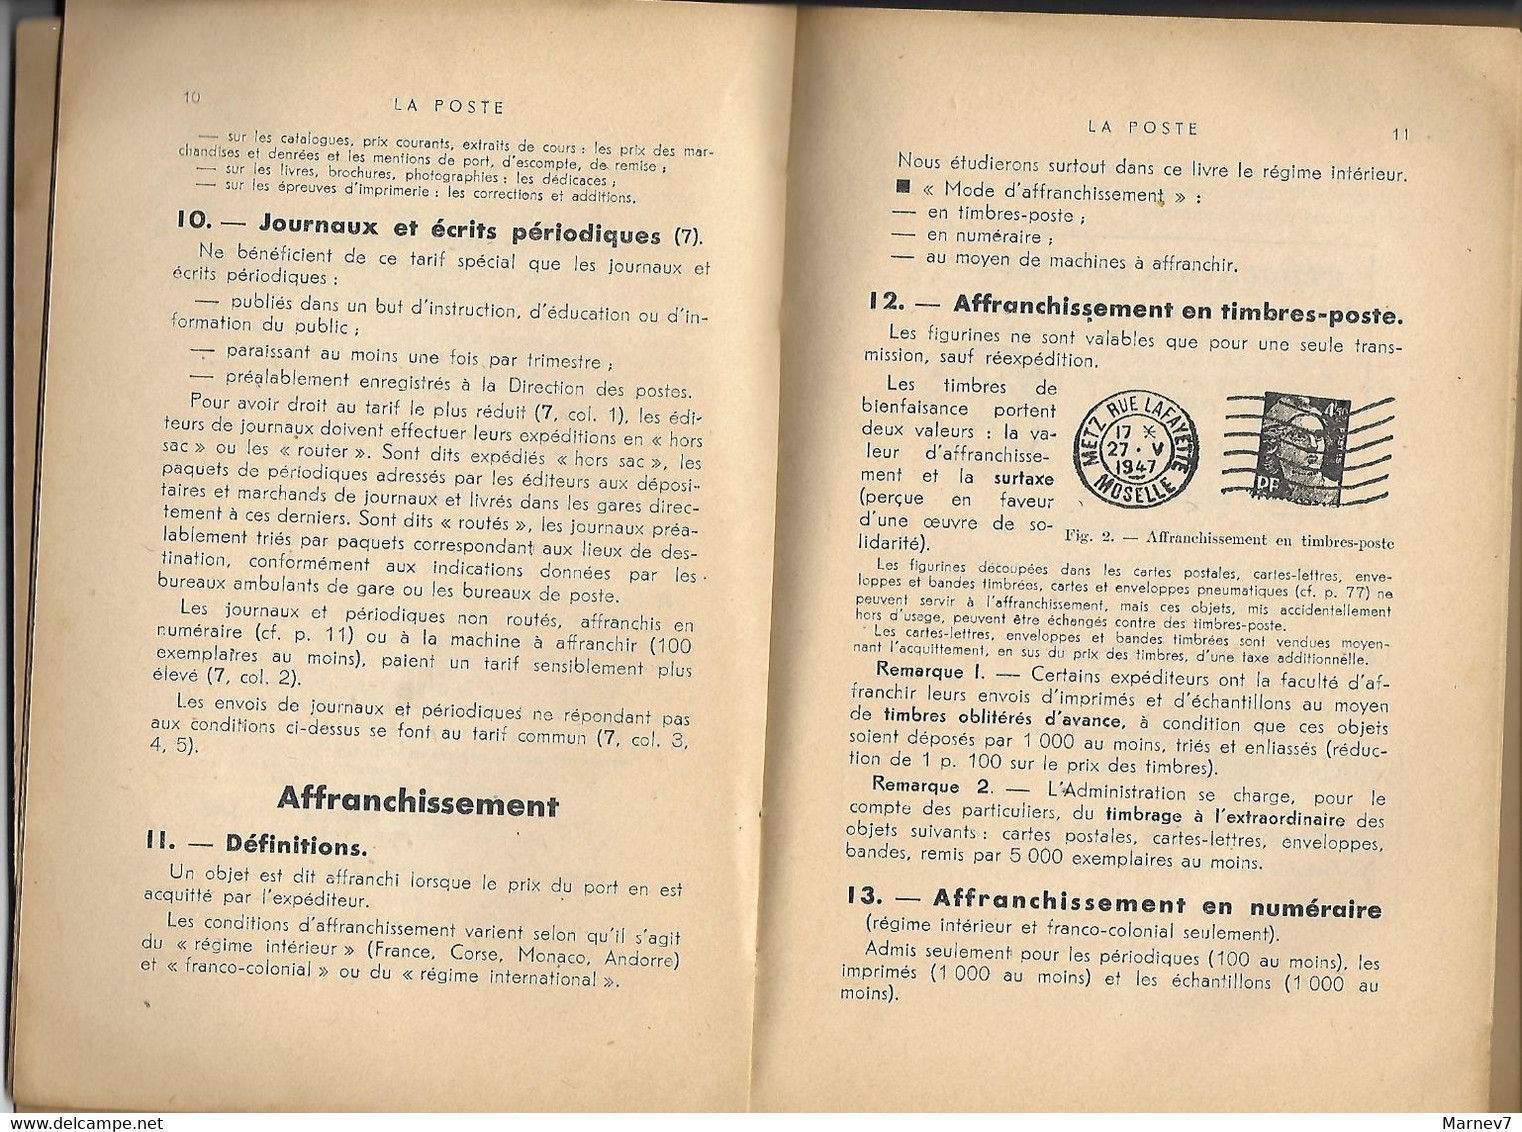 Petit Livre - La POSTE PTT Chèques Postaux - Cours Complet De Commerce Par Yvonne COURT Professeur - Postes - 1947 - Comptabilité/Gestion